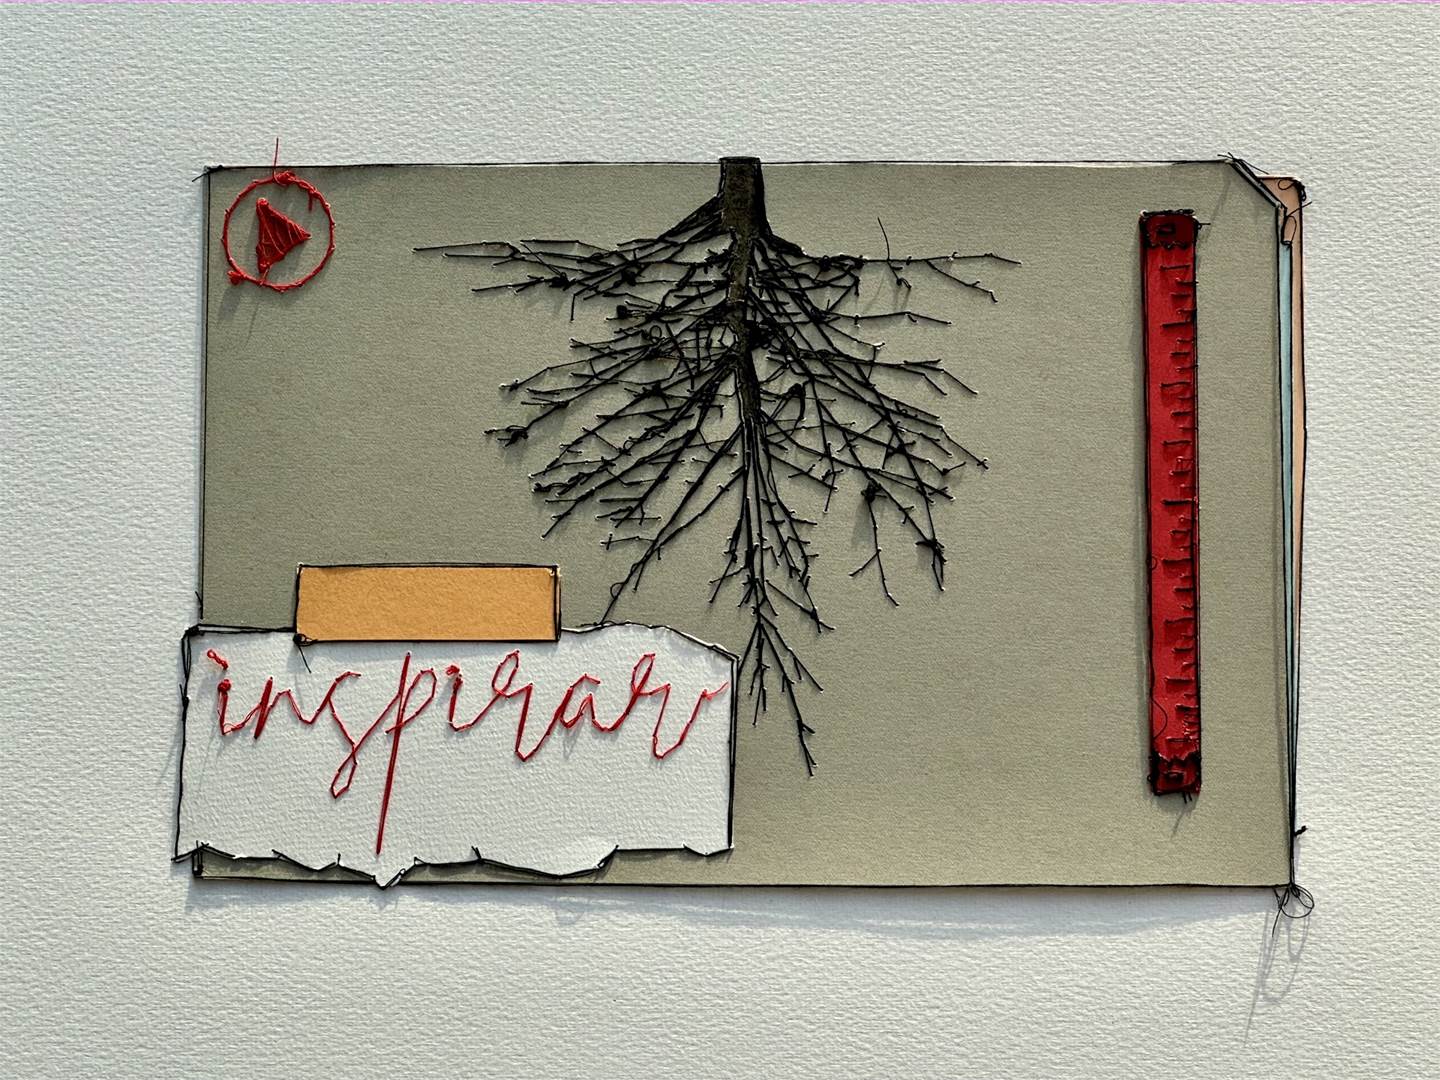 Passar a Palavra: "inspirar", original   Dessin et illustration par Alexandra de Pinho